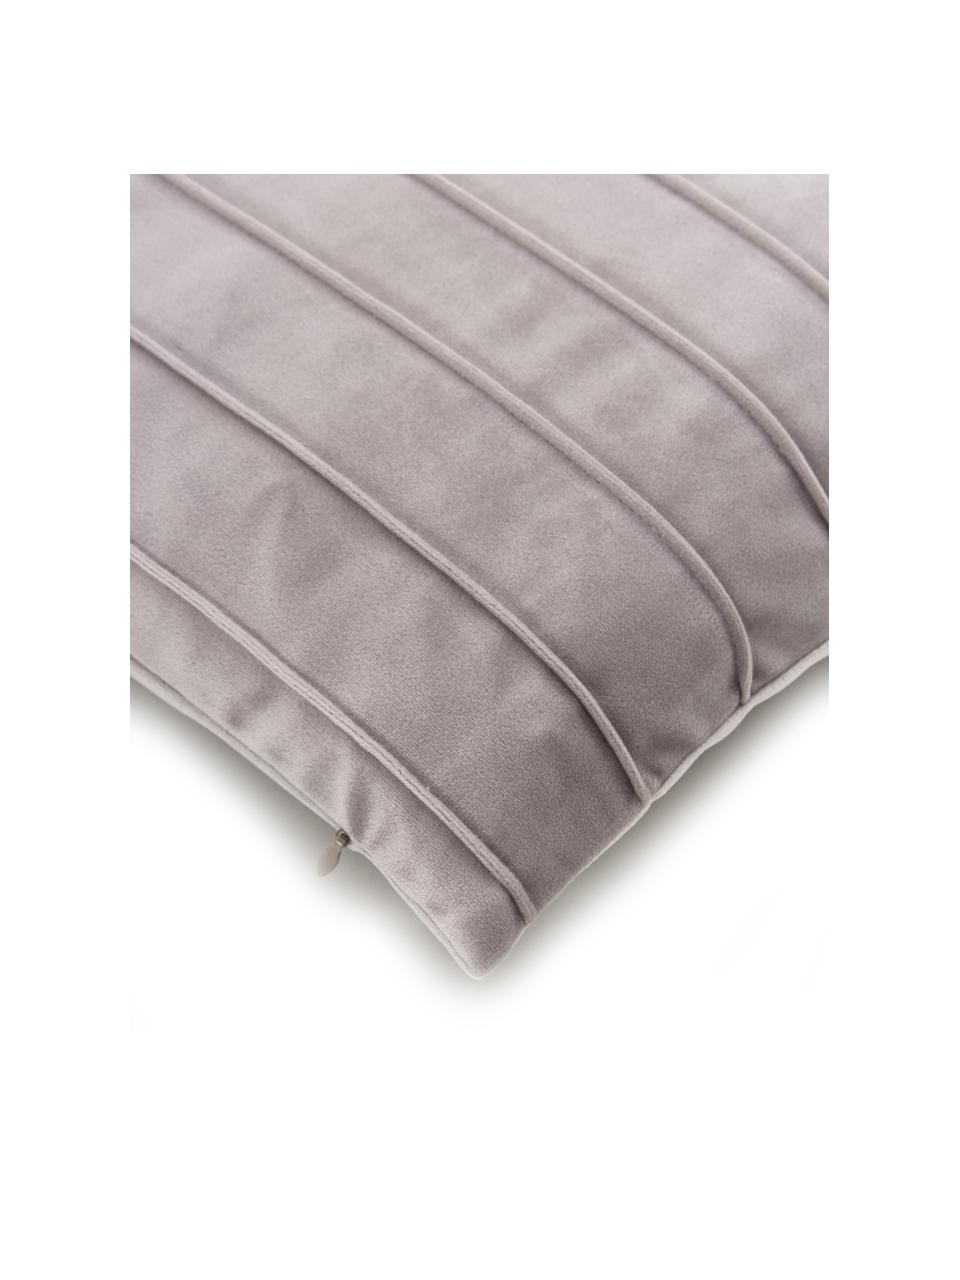 Federa arredo in velluto grigio chiaro con motivo strutturato Lola, Velluto (100% poliestere), Grigio, Larg. 40 x Lung. 40 cm